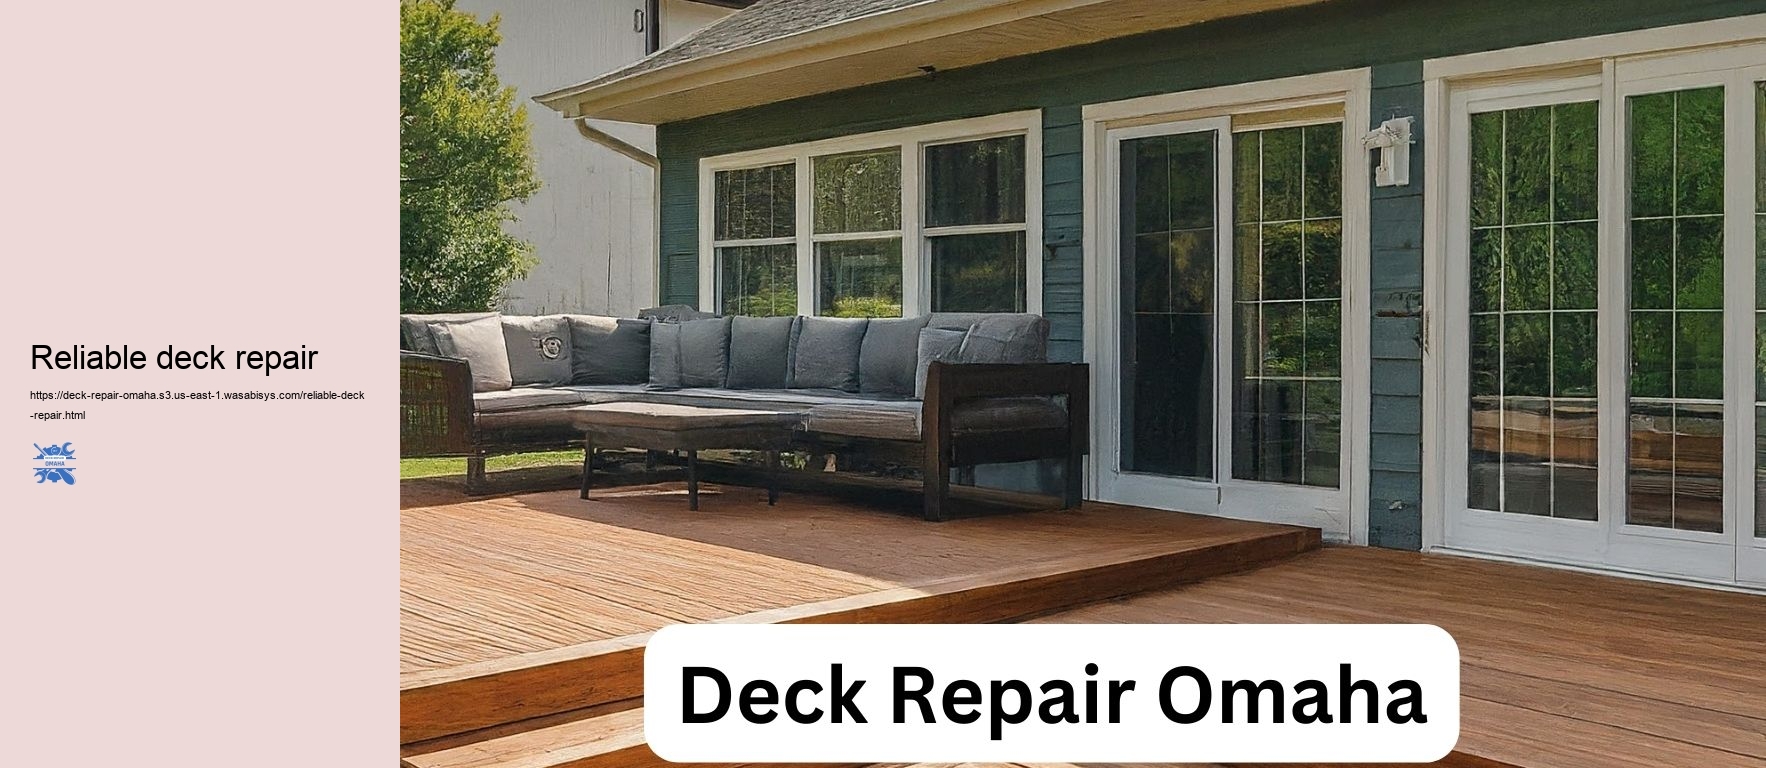 Reliable deck repair